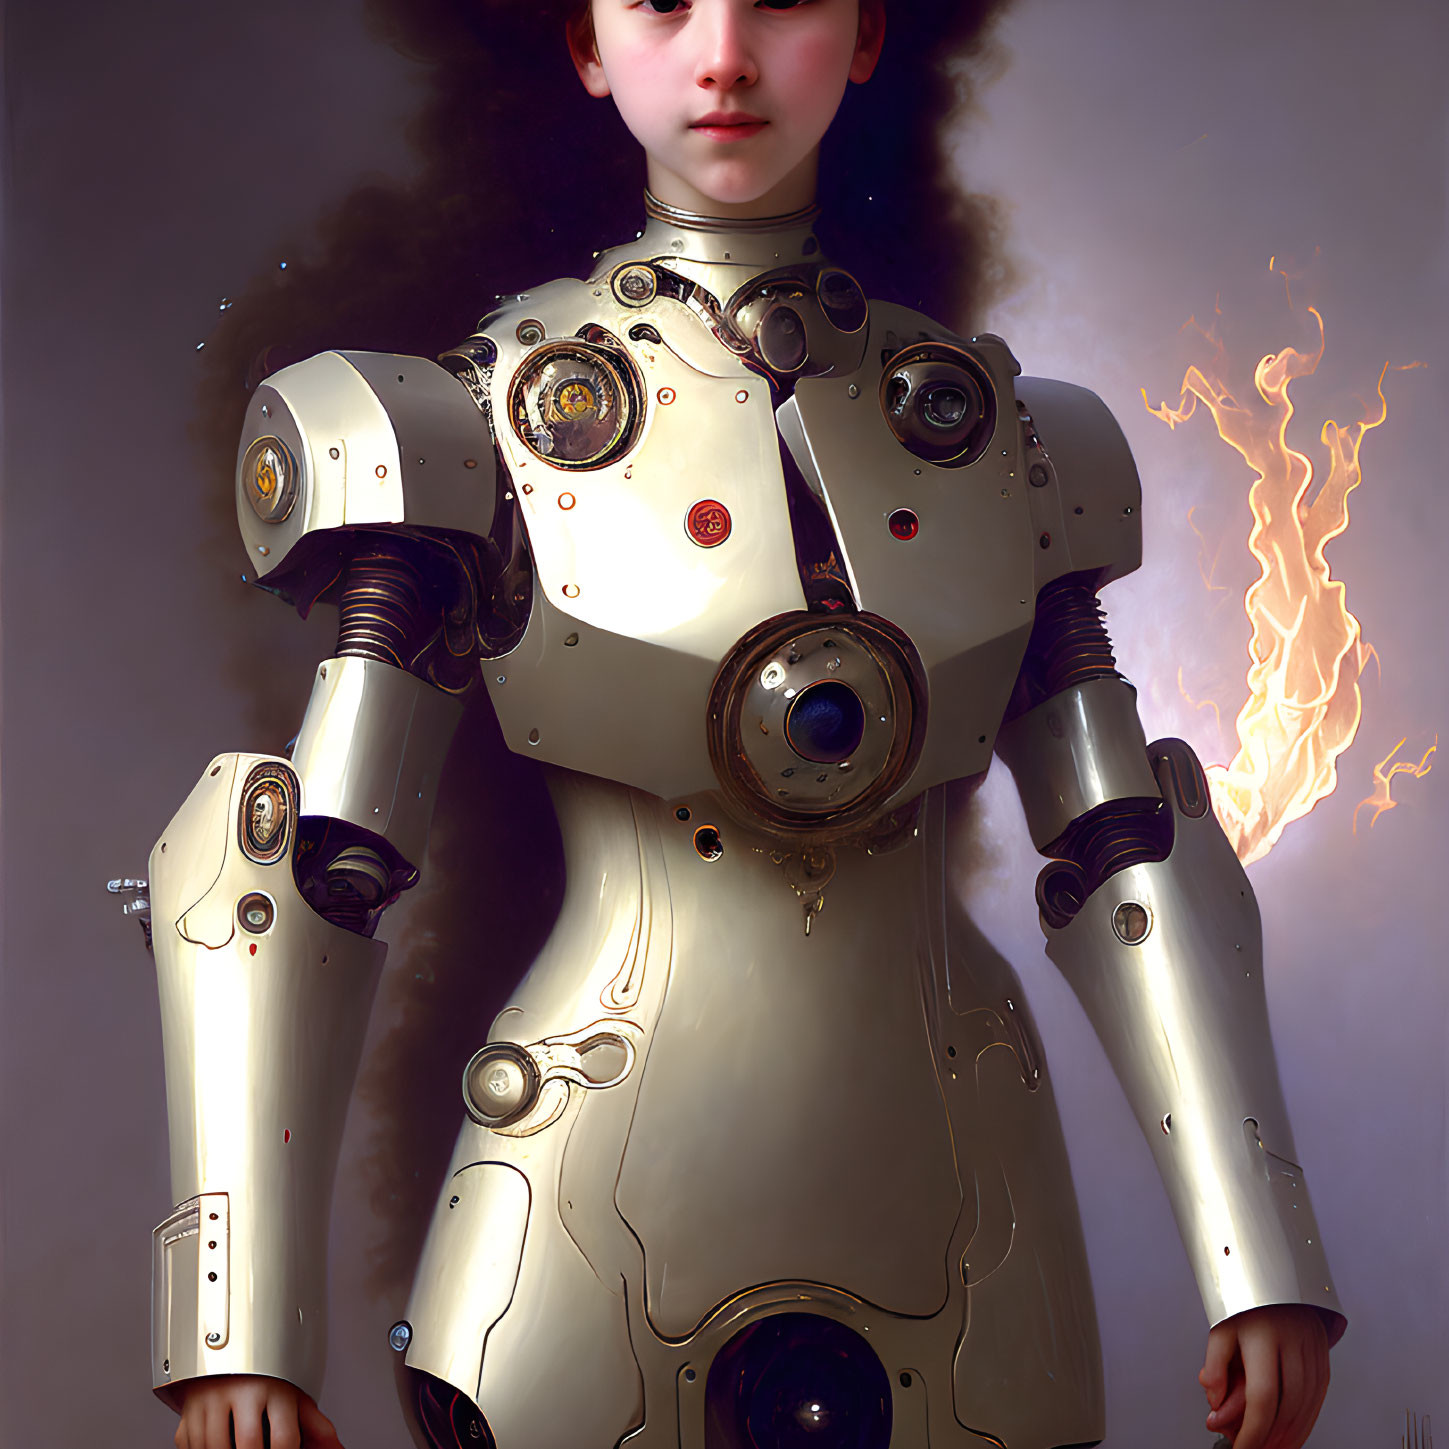 Robotic Girl around 1876